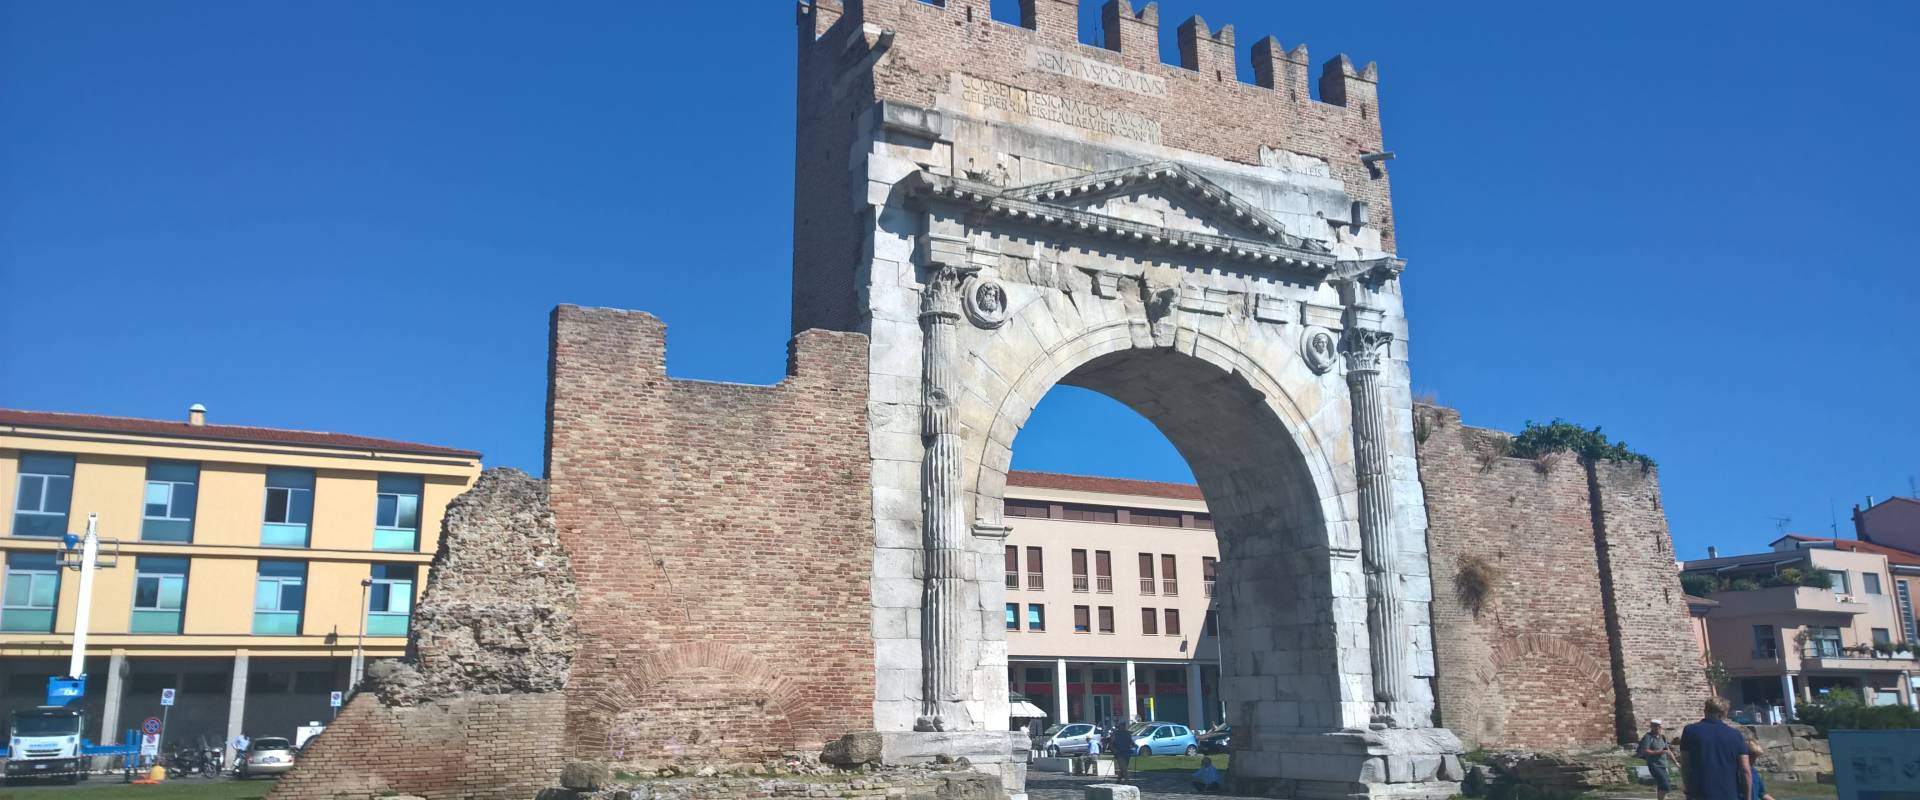 Arco di Augusto, Rimini (RN) photo by Mandu87